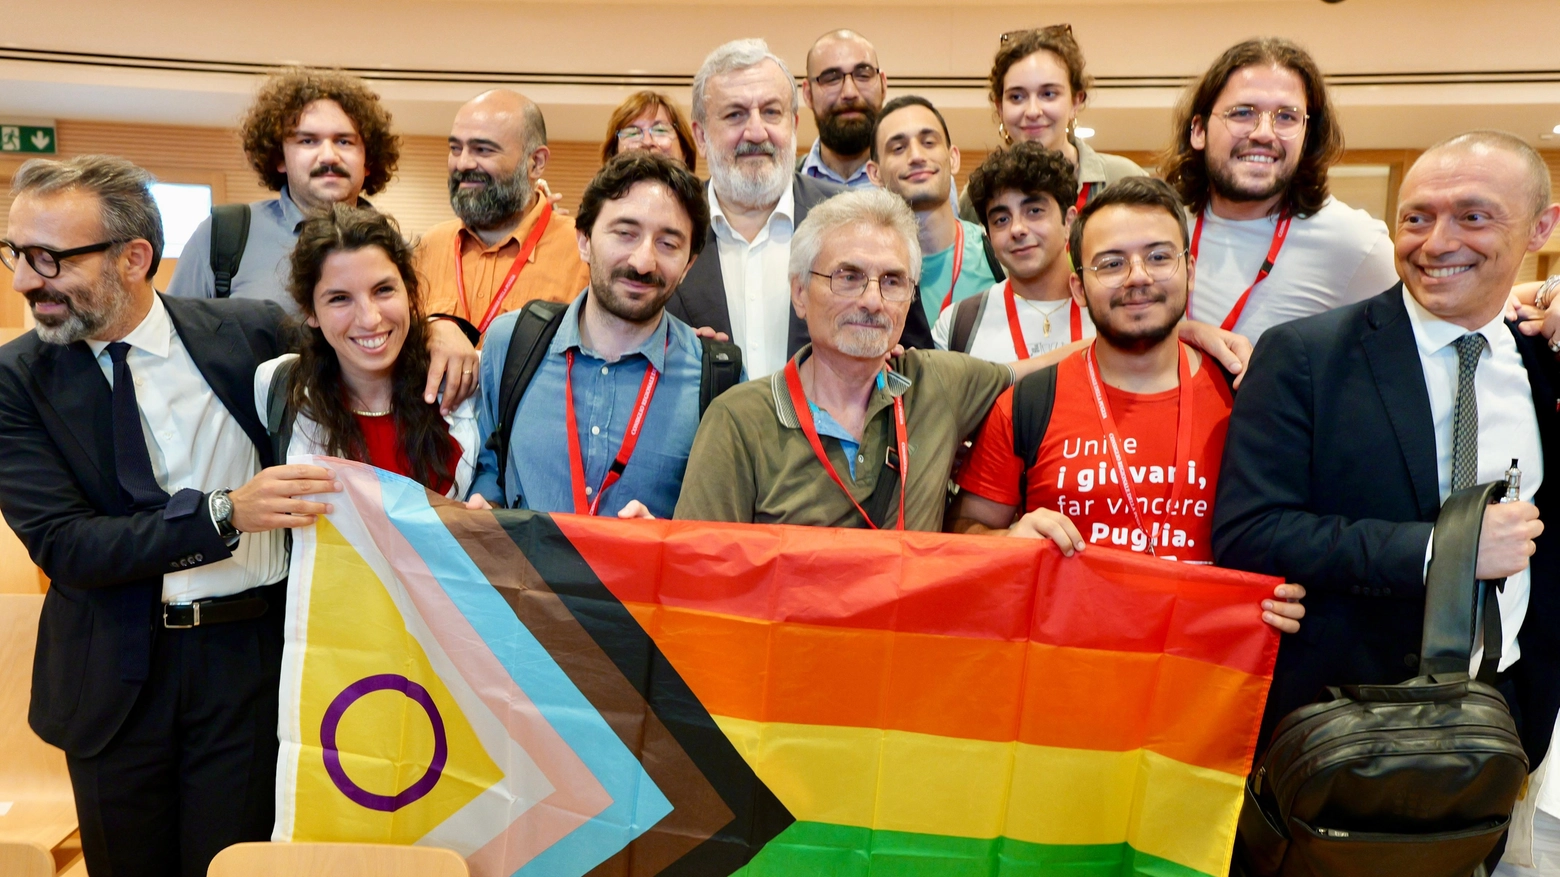 Si tratta della prima norma in Italia che punta a garantire il principio delle pari opportunità e della parità di trattamento in ambito lavorativo, condanndno qualsiasi genere di discriminazione legata all’orientamento sessuale e all’identità ed espressione di genere